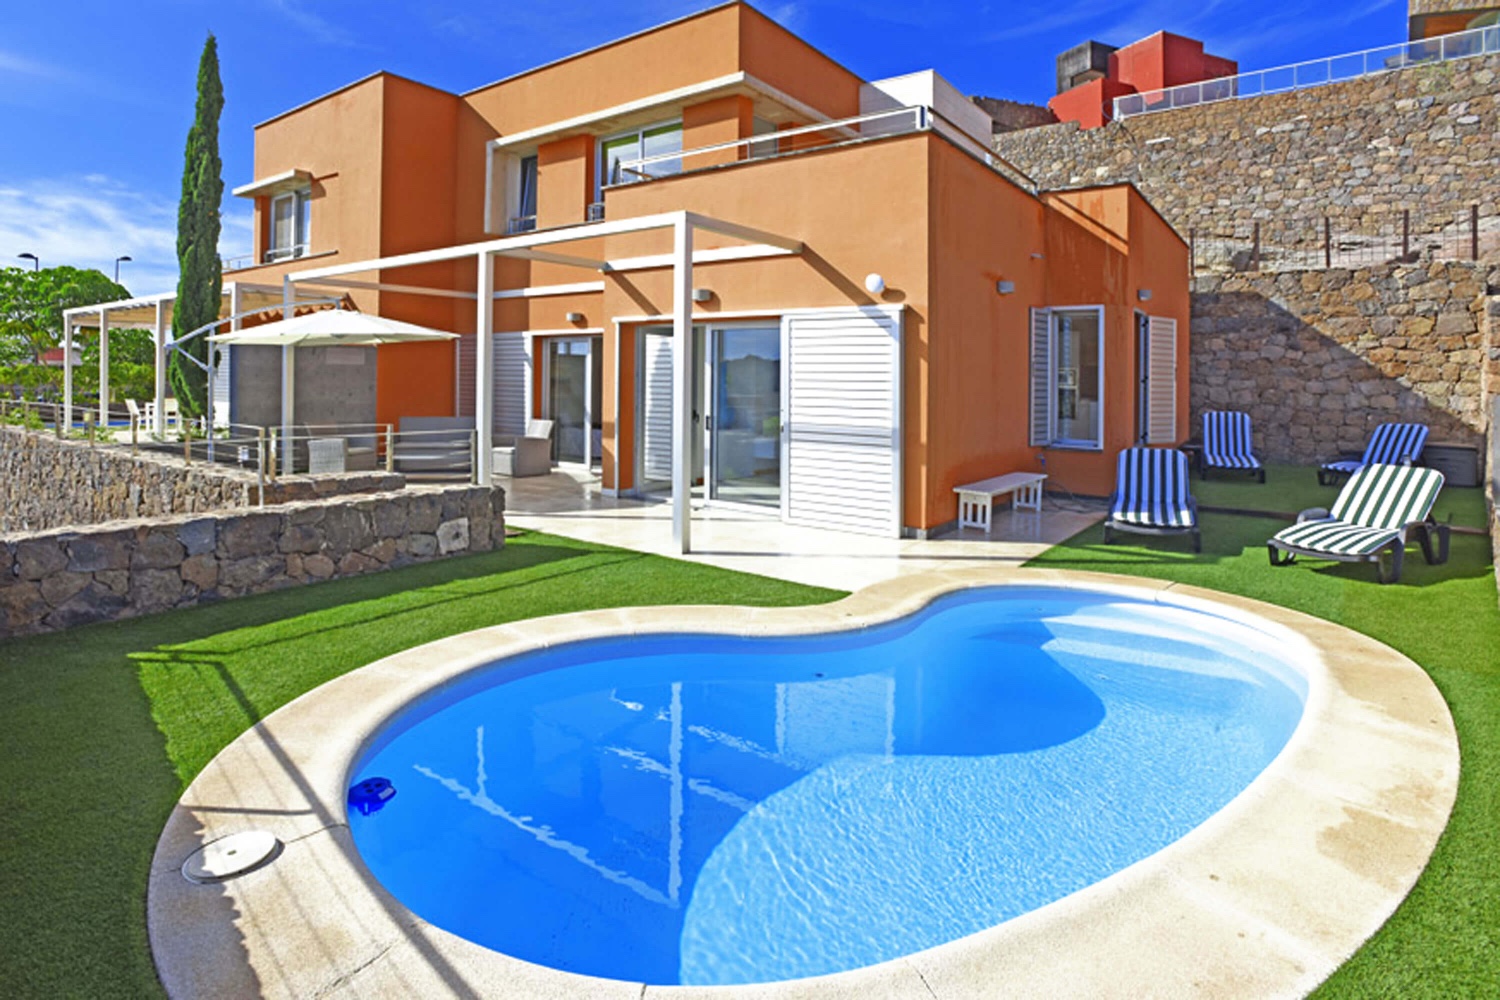 Luminosa casa bicamere con piacevole area relax esterna e piscina privata riscaldata